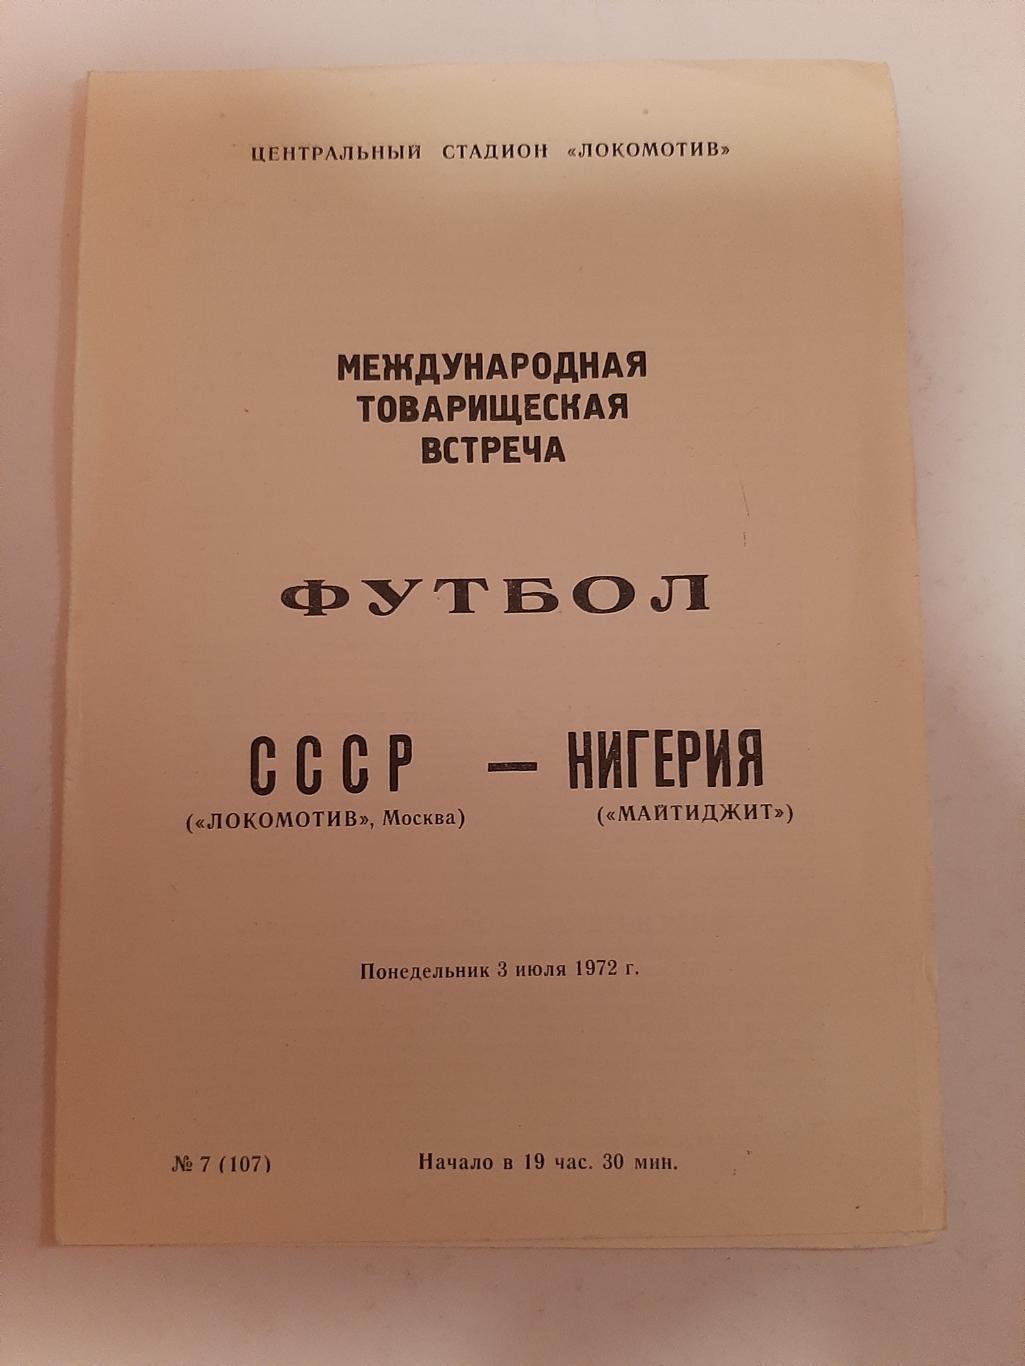 Локомотив Москва - Нигерия Майтиджит 3.07.1972